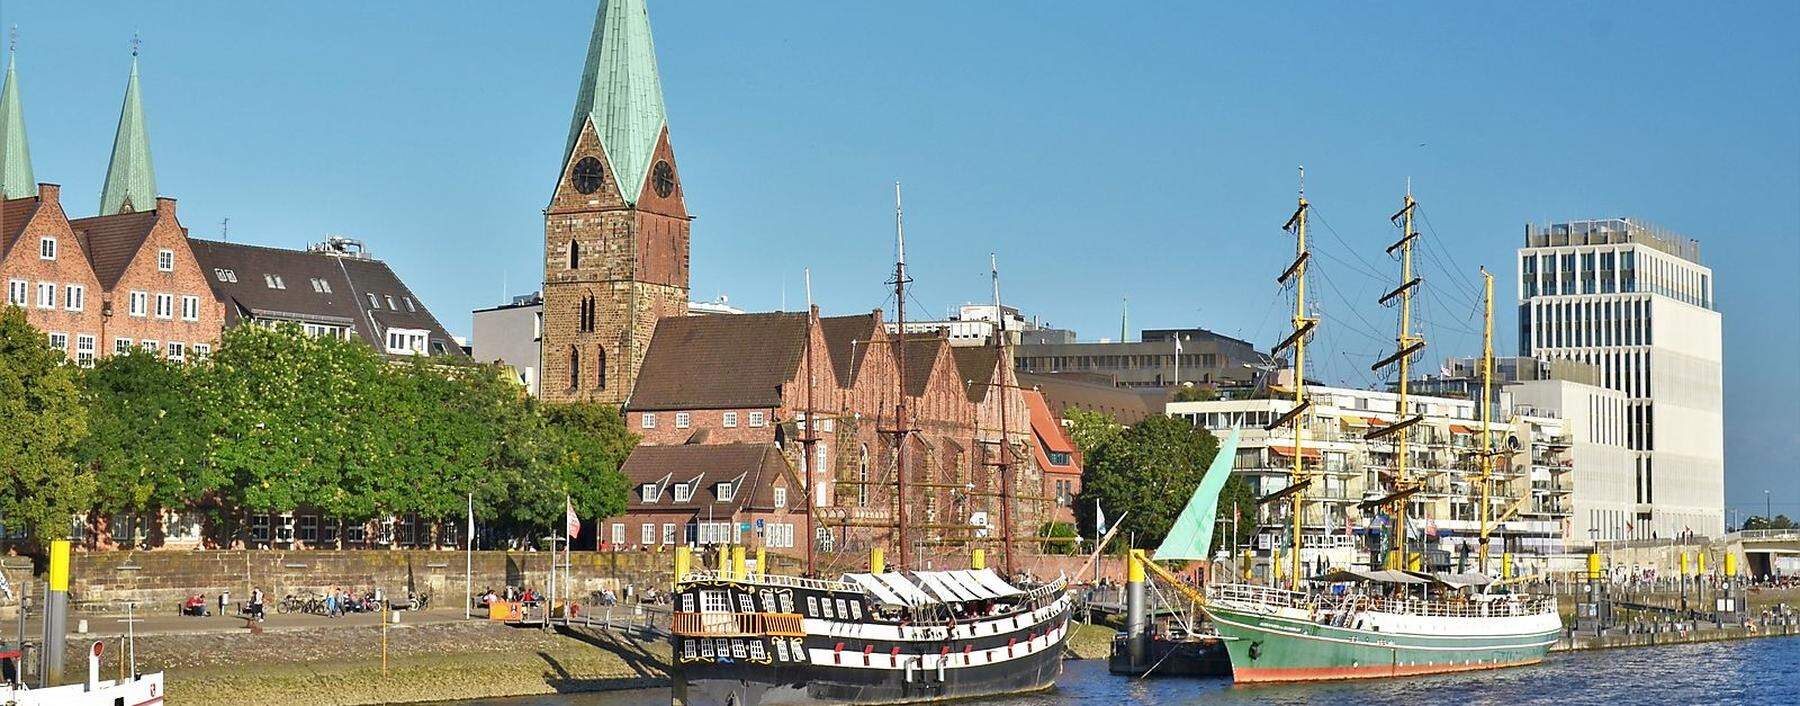 Bremen, die Hansestadt, von ihrer schönen Seite zur Weser hin. 